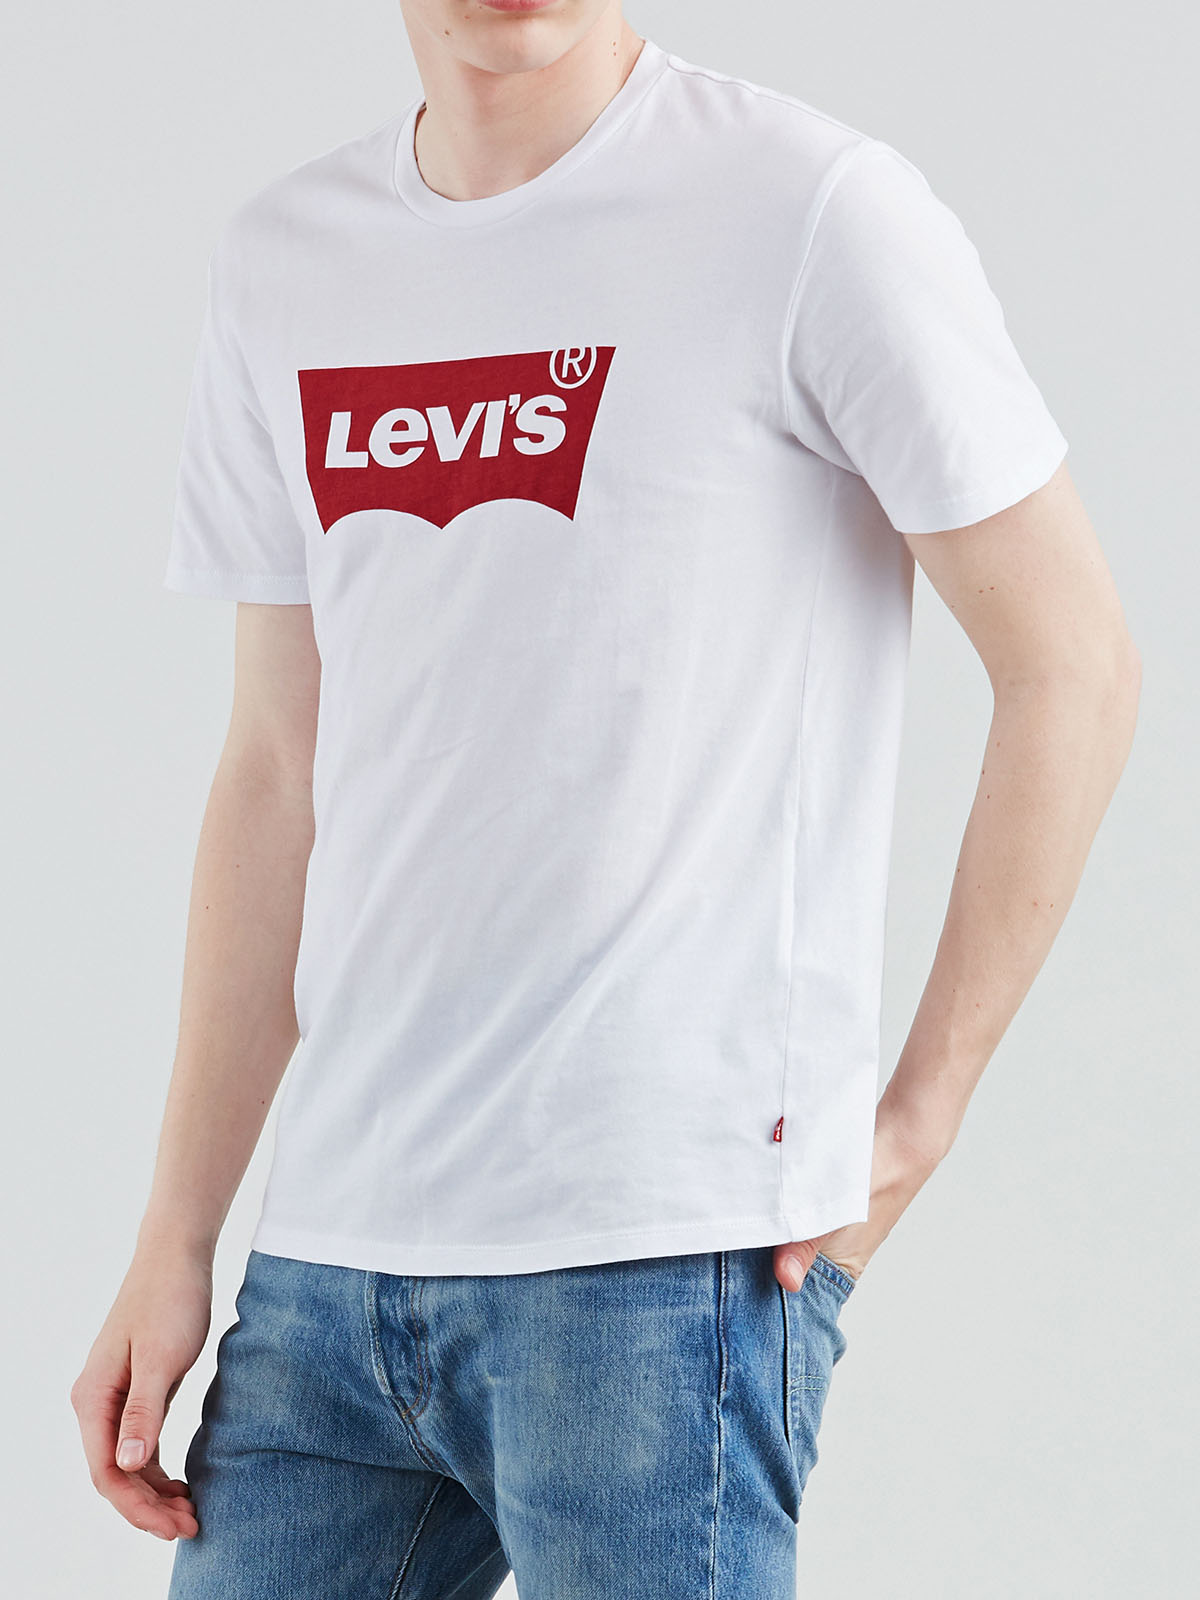 Levi's samarreta logo màniga curta d'home 17783-0140 blanca